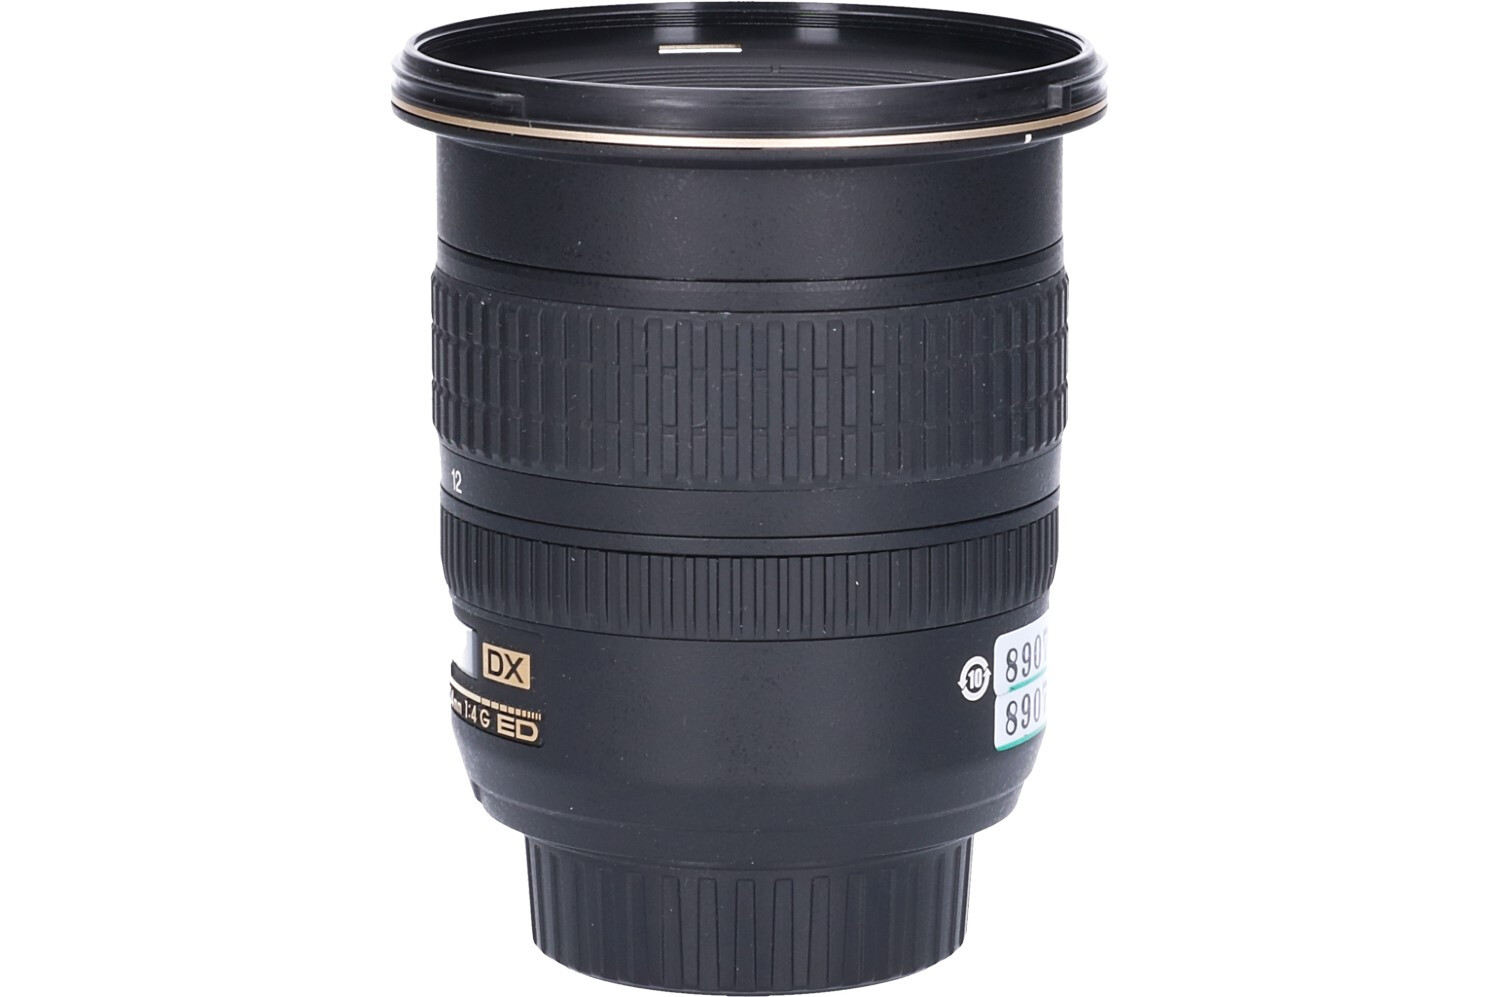 Nikon AF-S NIKKOR 12-24mm f/4 G ED DX Zoom Lens w/ HB-40 